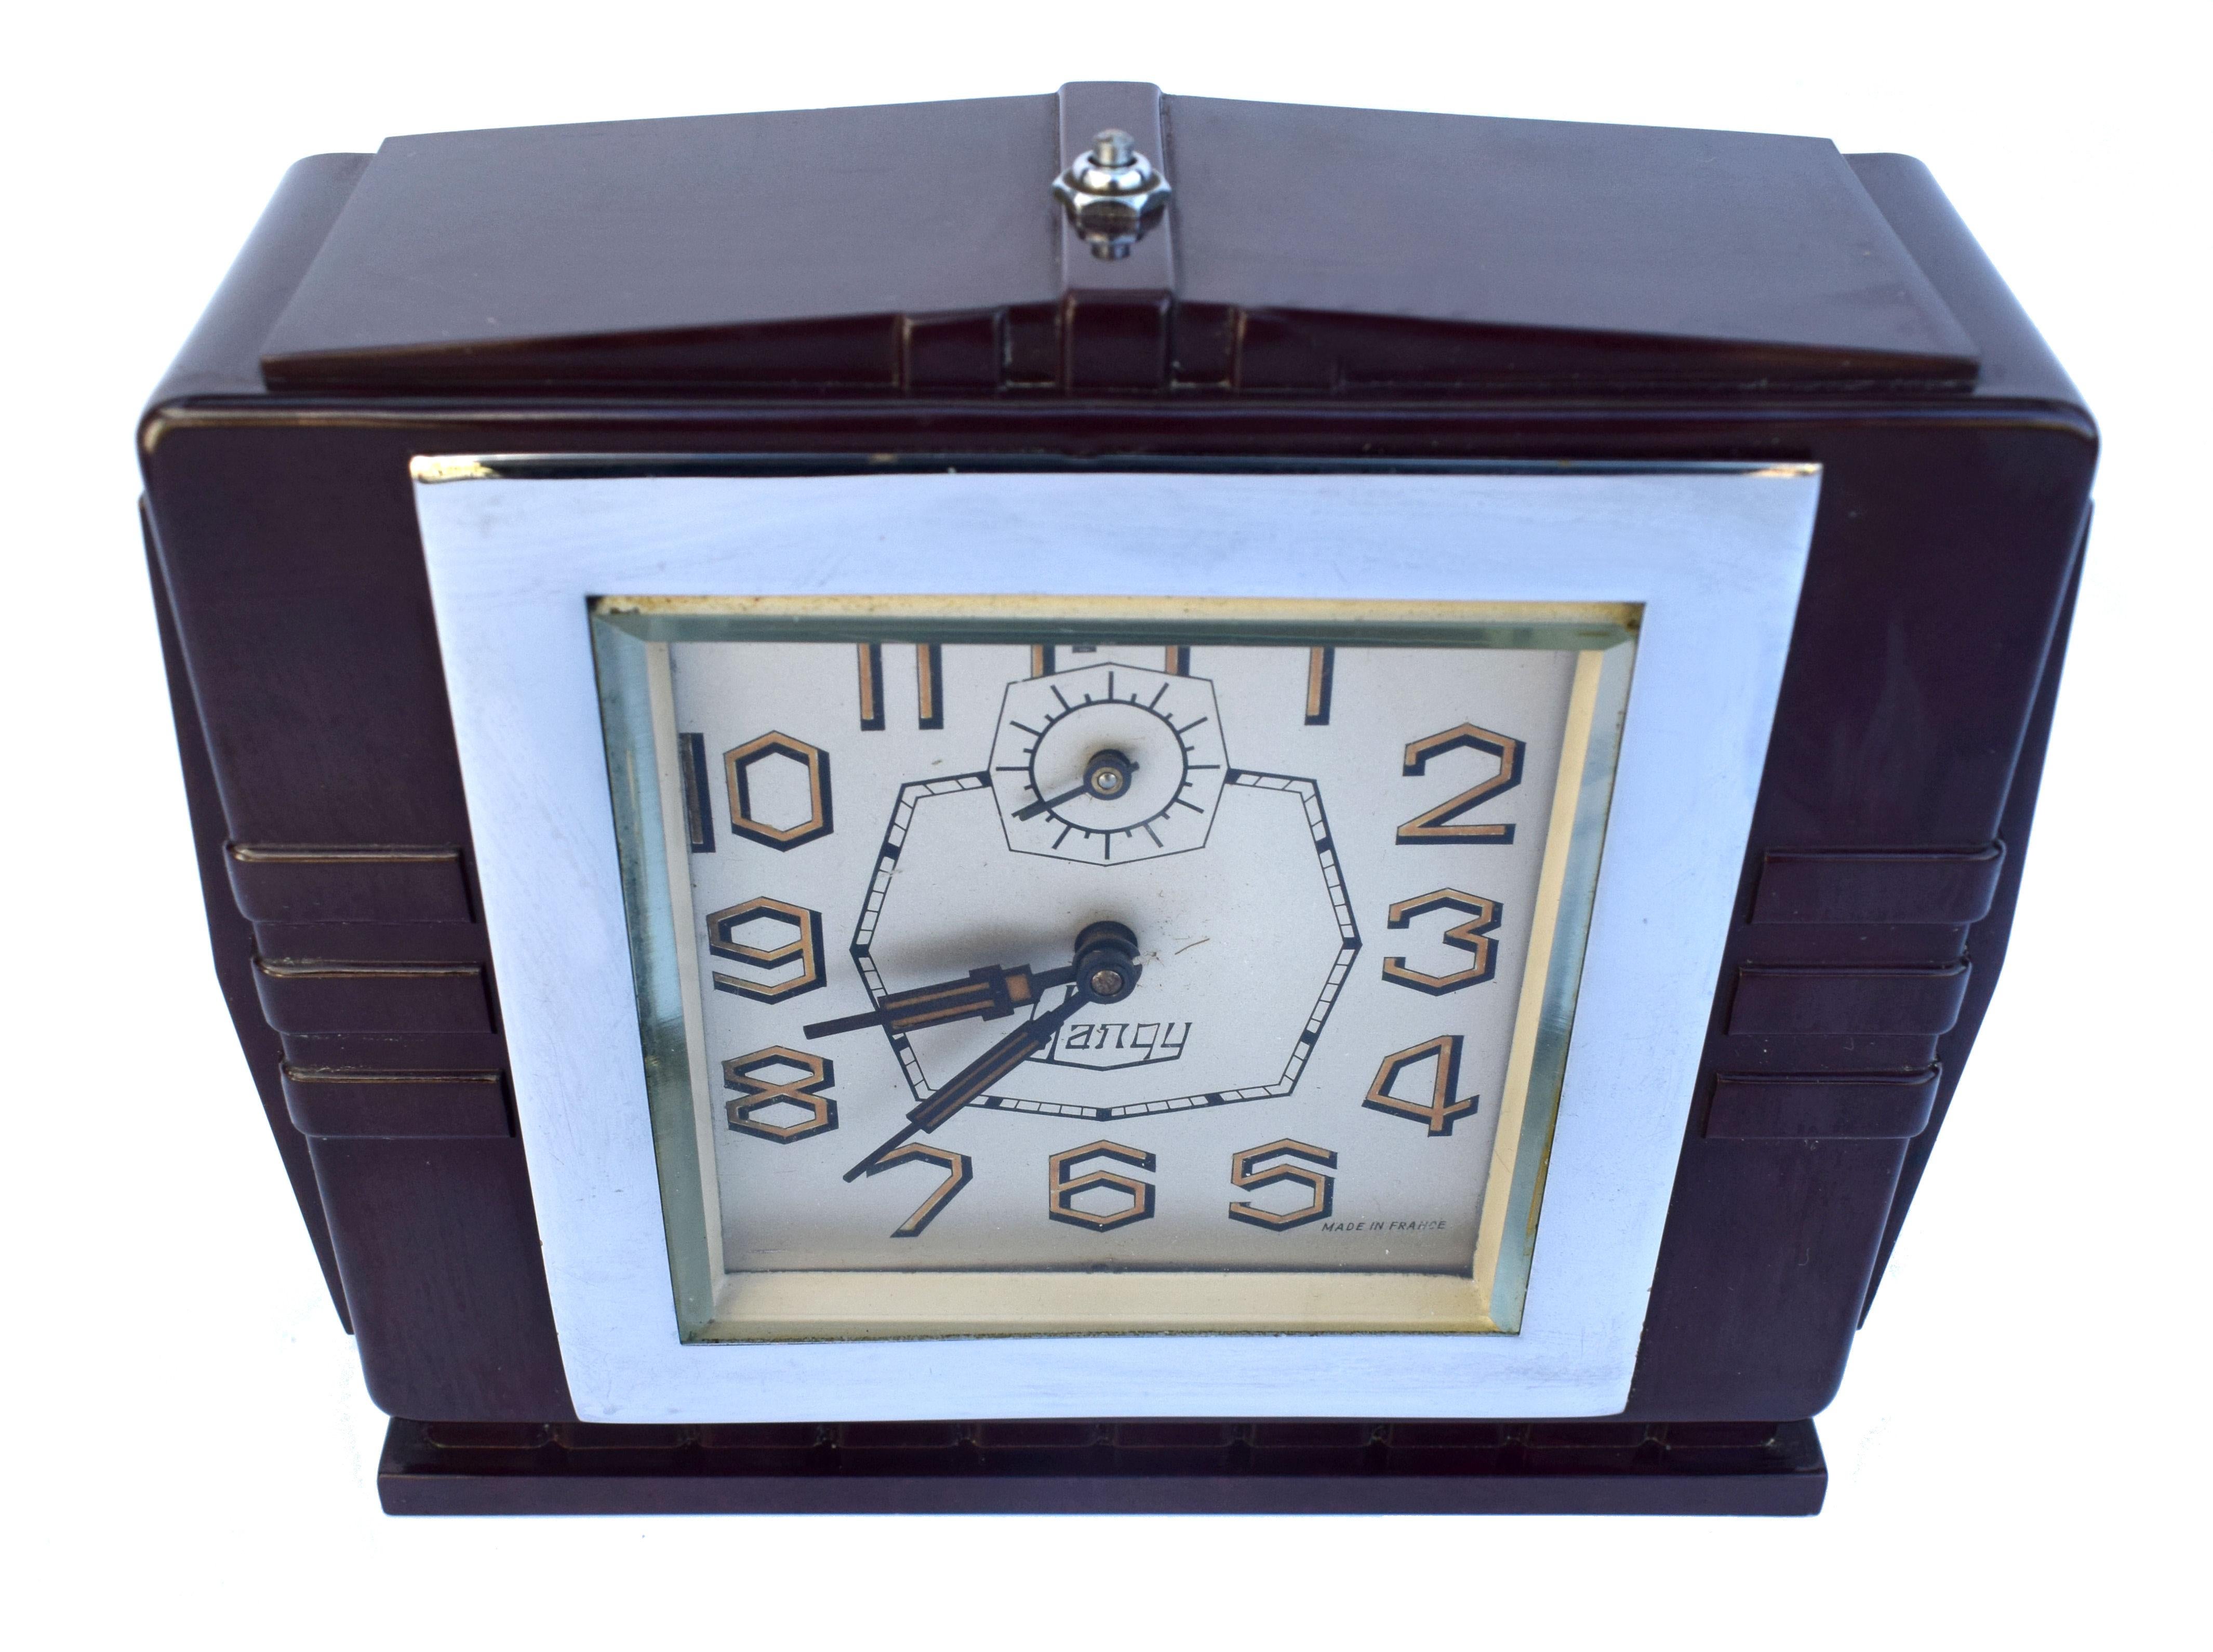 Sehr attraktiv 1930's Art Deco Bakelit Uhr mit einem sehr markanten Zifferblatt, Blangy Uhren haben immer erstaunlich gestylt Ziffern und dieses ist nicht anders. Die aus Frankreich stammende Uhr ist mit ihrem fabelhaft geformten Bakelitgehäuse der